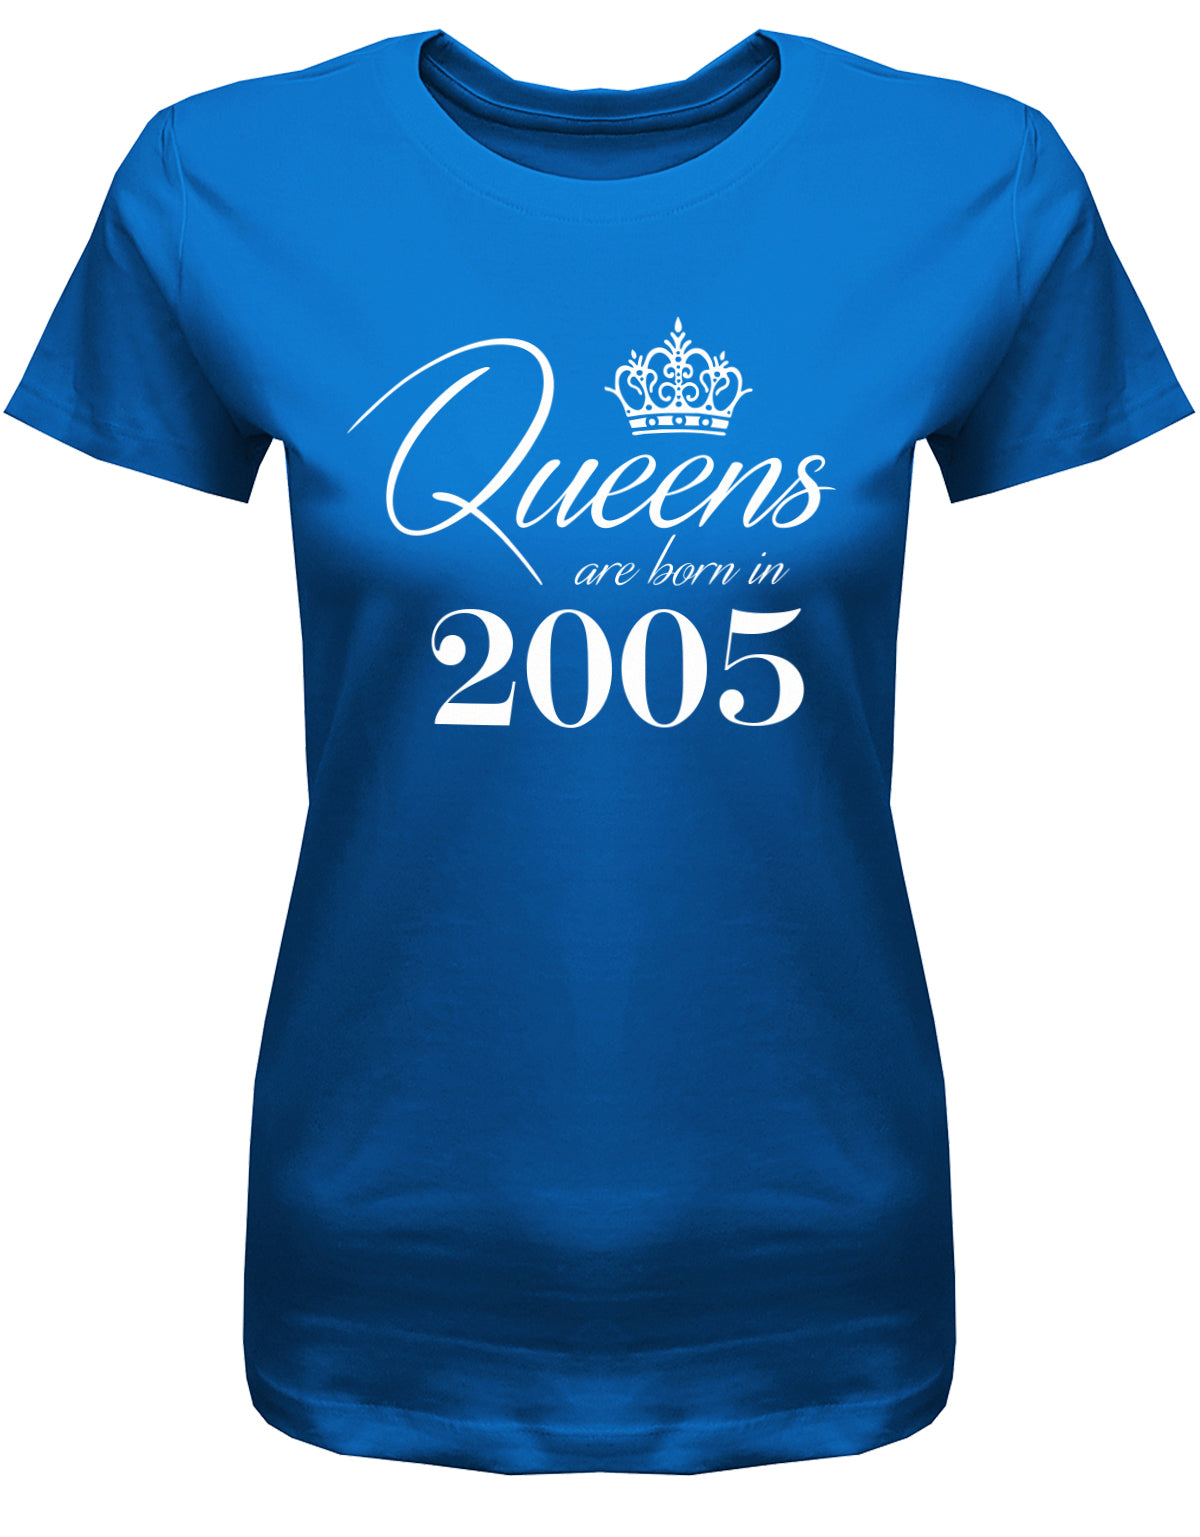 Lustiges T-Shirt zum 18. Geburtstag Mädchen. Bedruckt mit: Queens are born in 2005 - Königin wurden 2005 geboren. Das T Shirt 18 Geburtstag Mädchen Lustig ist ein tolles Geschenk für alle 18 Jährigen. Man wird nur einmal 18 Jahre. Geschenk zum 18 geburtstag Frau ✓ 2005 geburtstag Frau ✓ 18 Geburtstag tshirt ✓ shirt geburtstag 18 Royalblau